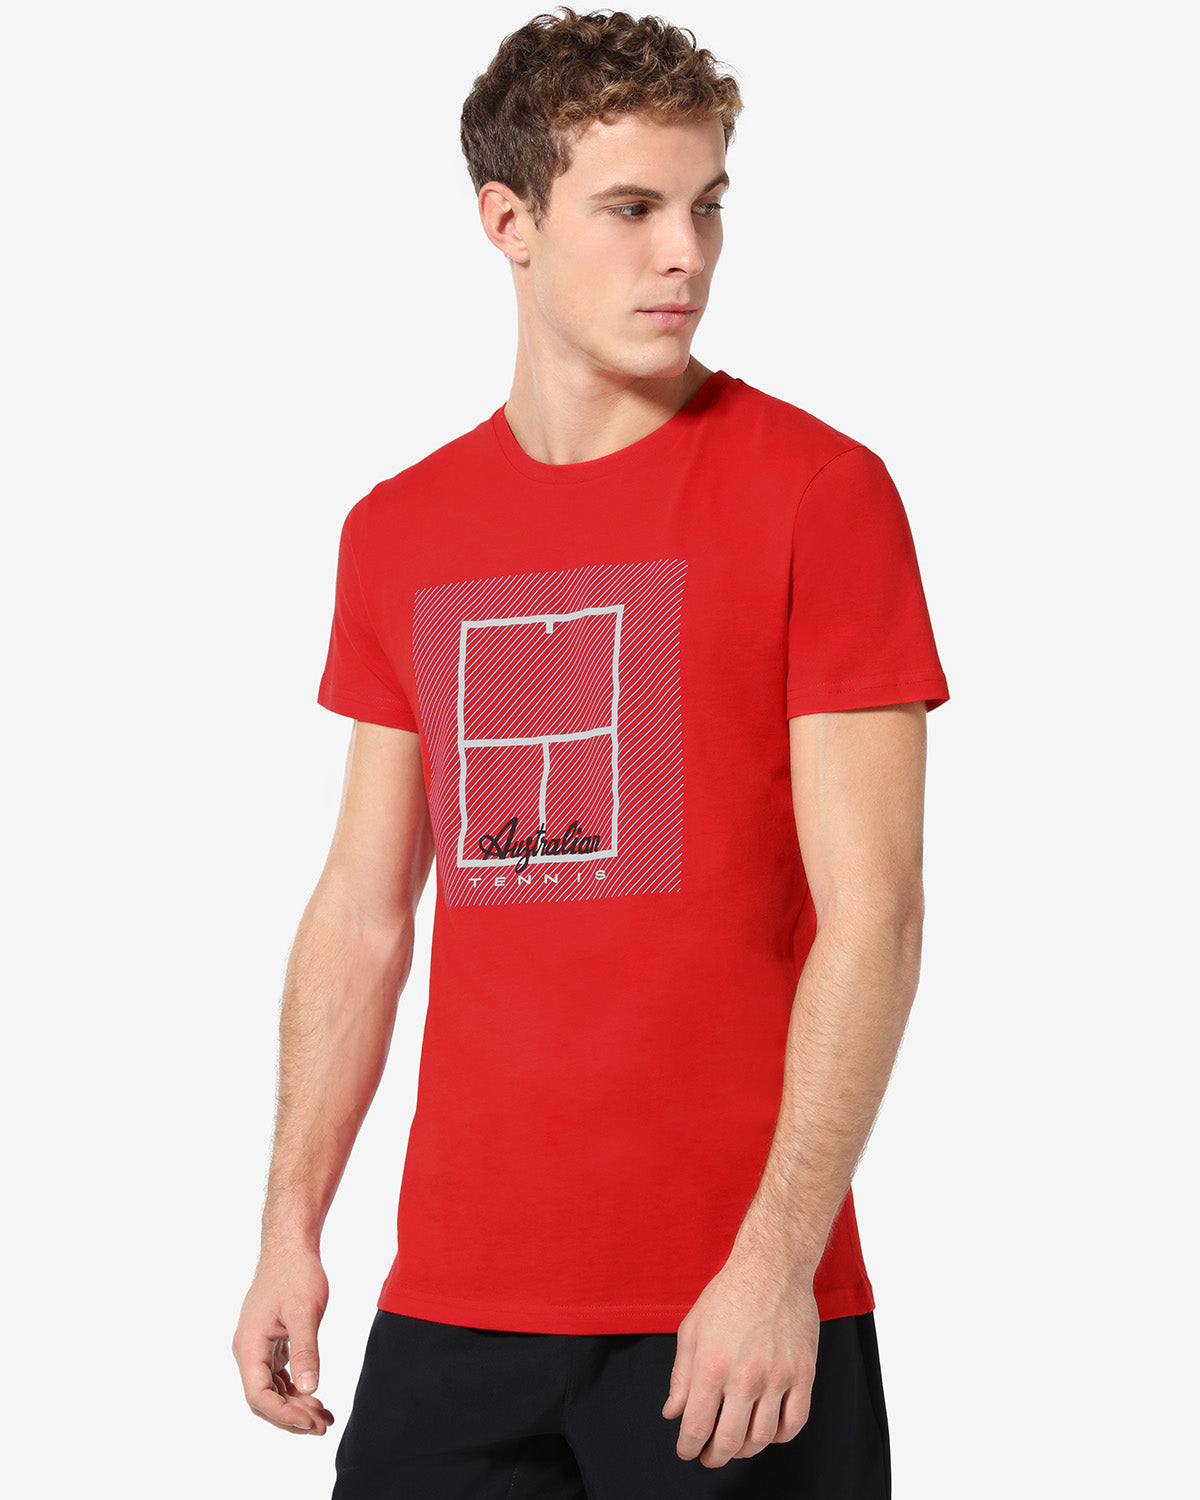 Tennis Court T-shirt: Australian Tennis